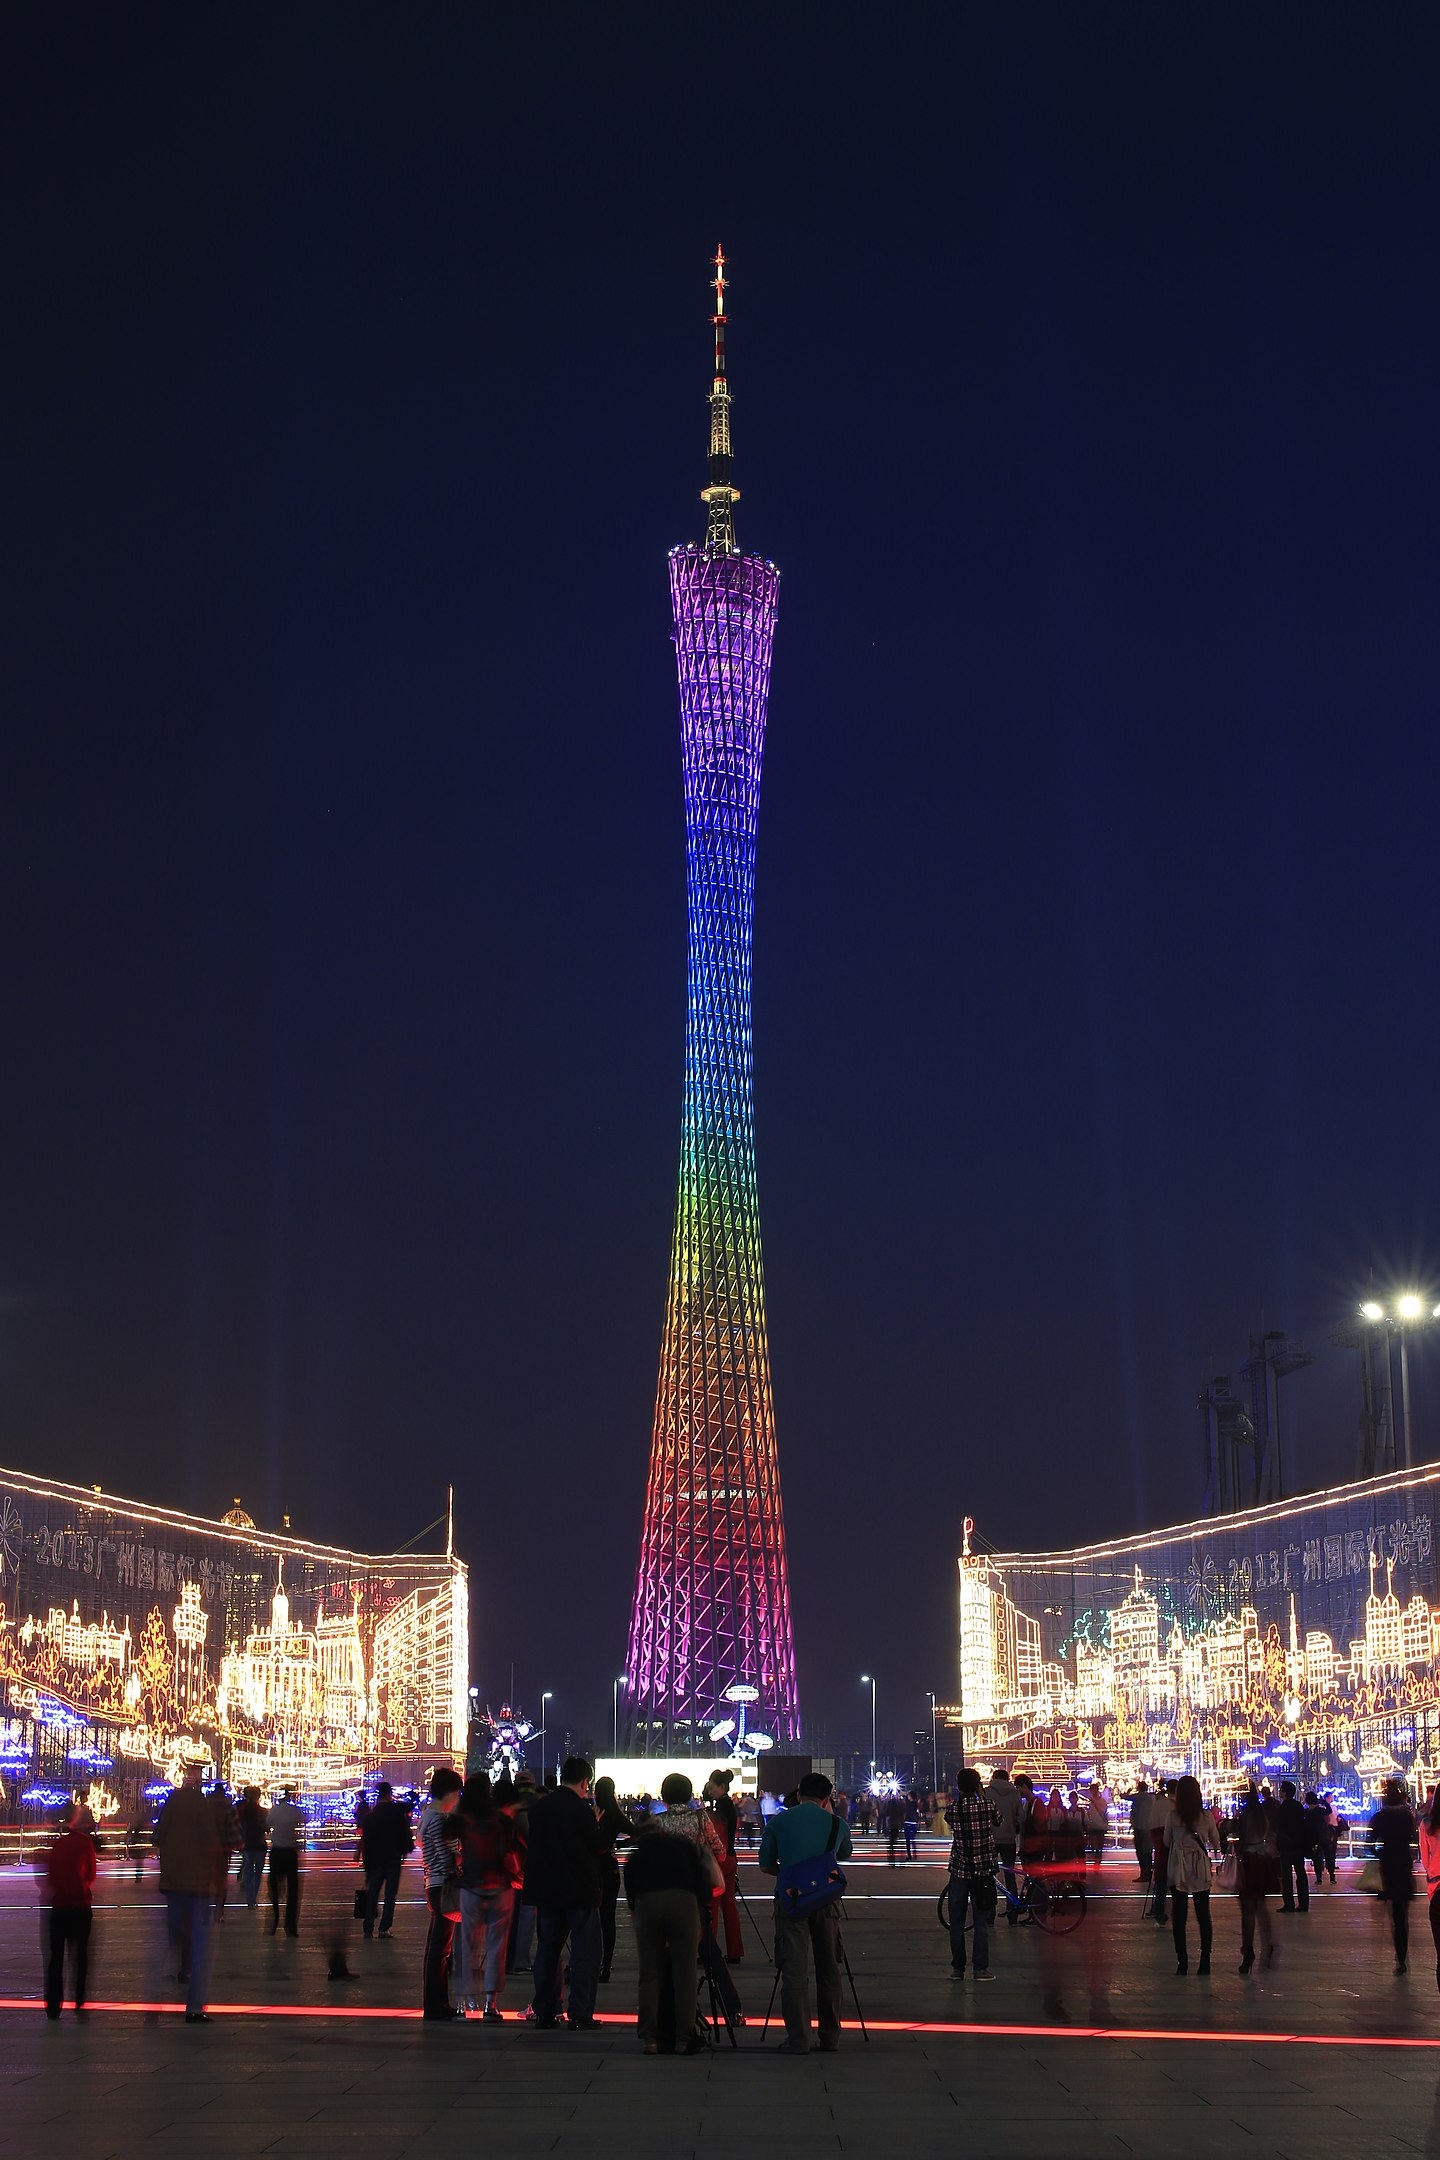 Canton Tower - 600 metros - China - Inaugurada em 2012, na cidade de Guangzhou, predominou como a maior torre do país até a construção da Torre de Shanghai. E no mundo só perde em altura para a Tokyo Skytree. Sua iluminação tem 7 mil luzes de led, que proporcionam um grande espetáculo. Reprodução: Flipar